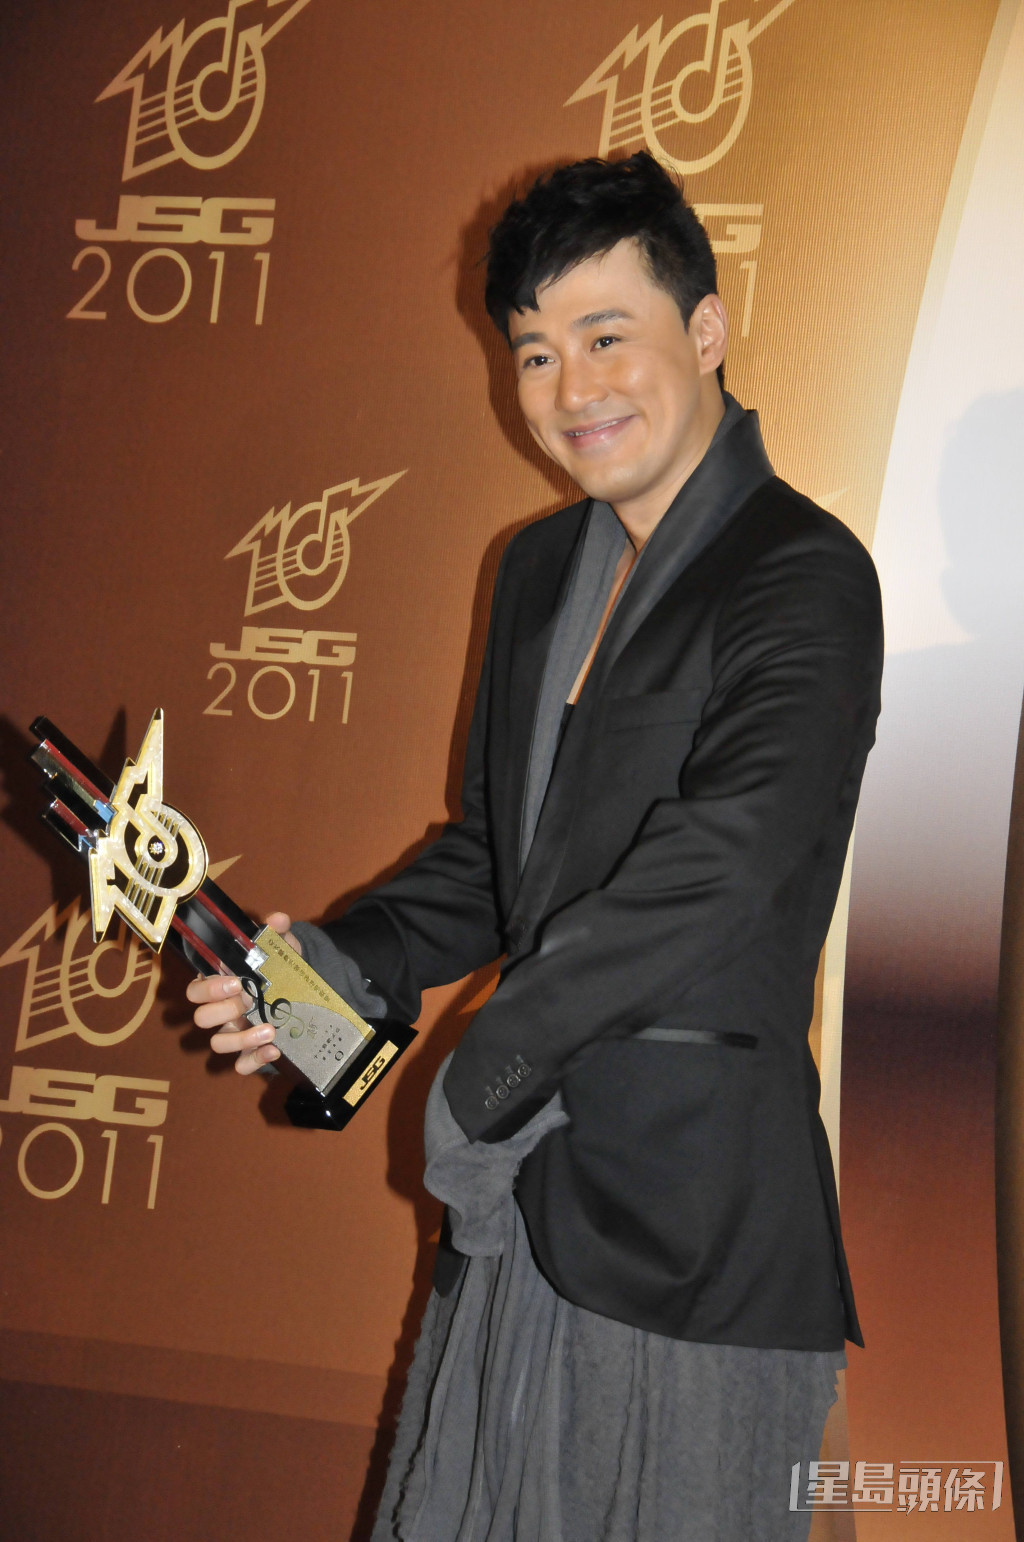 當年《Chok》更獲得《十大勁歌金曲》的金曲金獎。